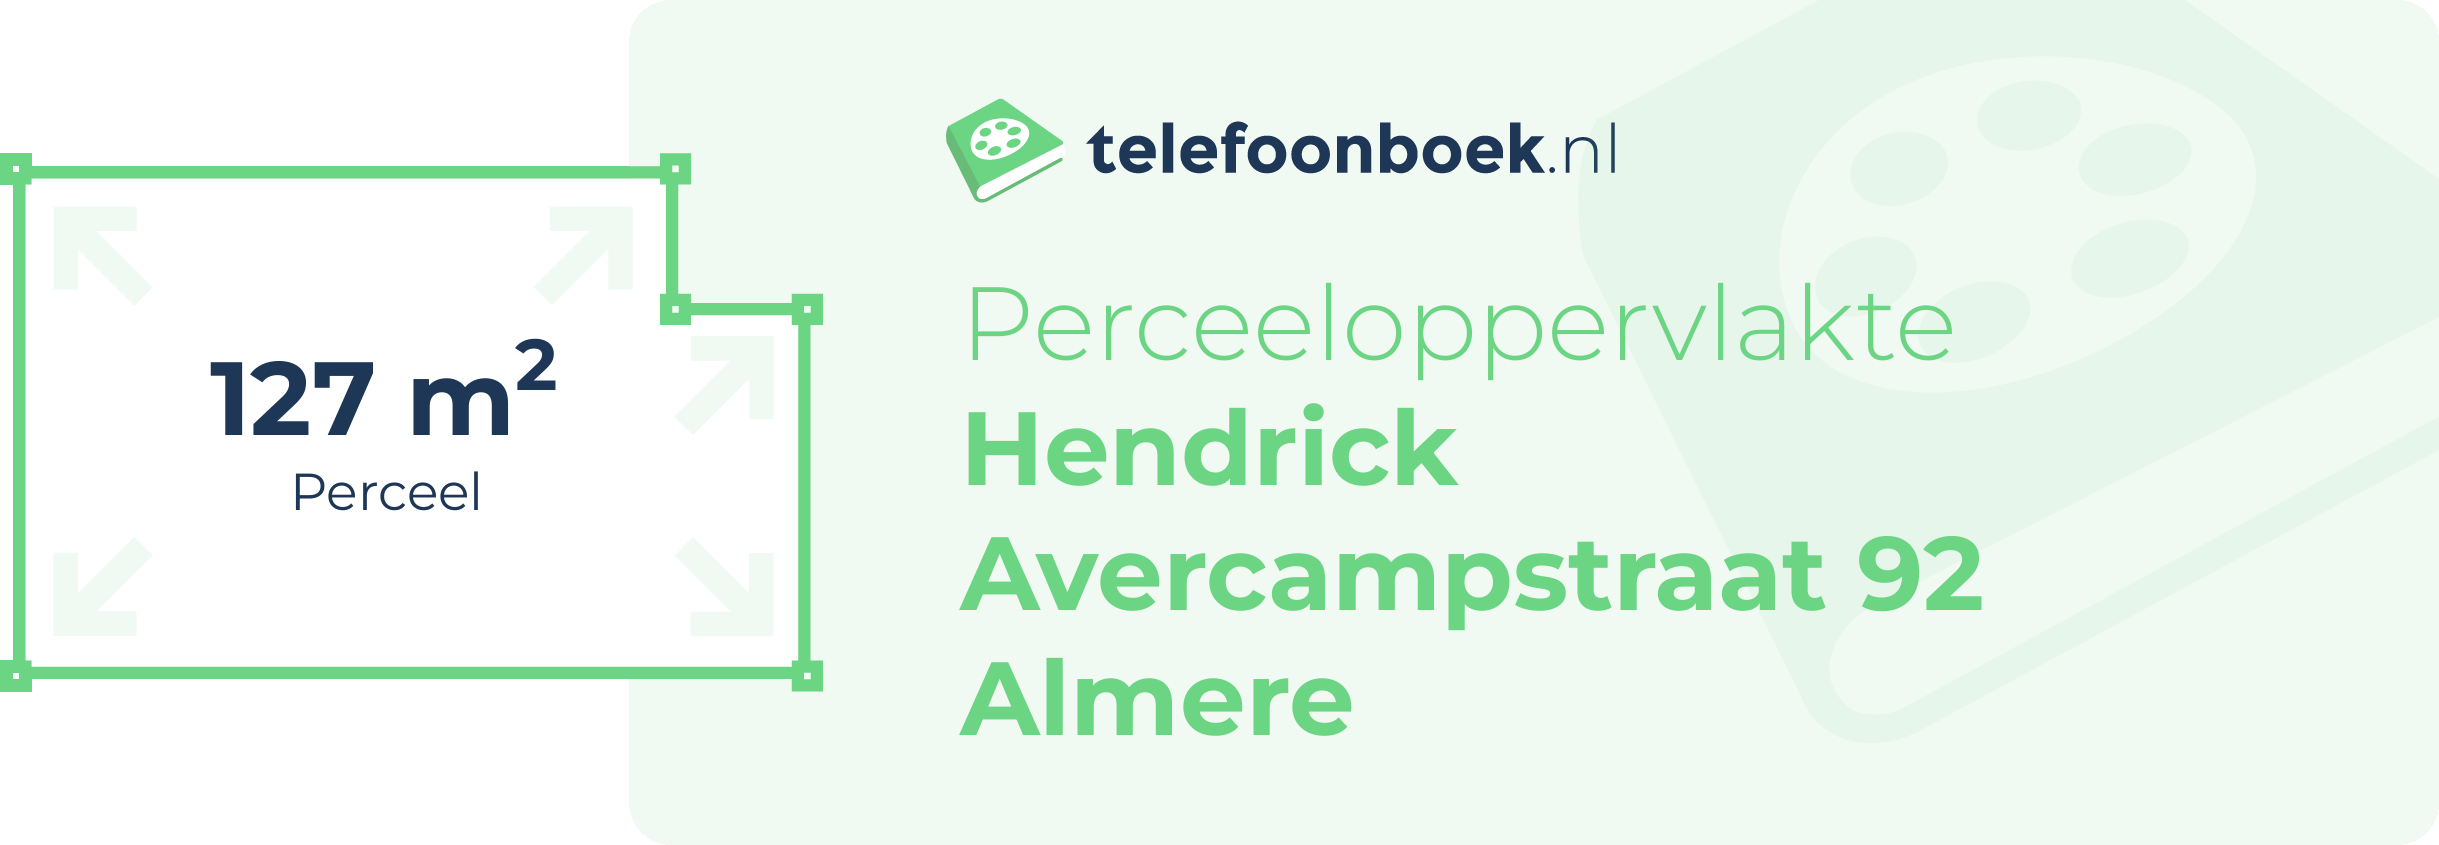 Perceeloppervlakte Hendrick Avercampstraat 92 Almere